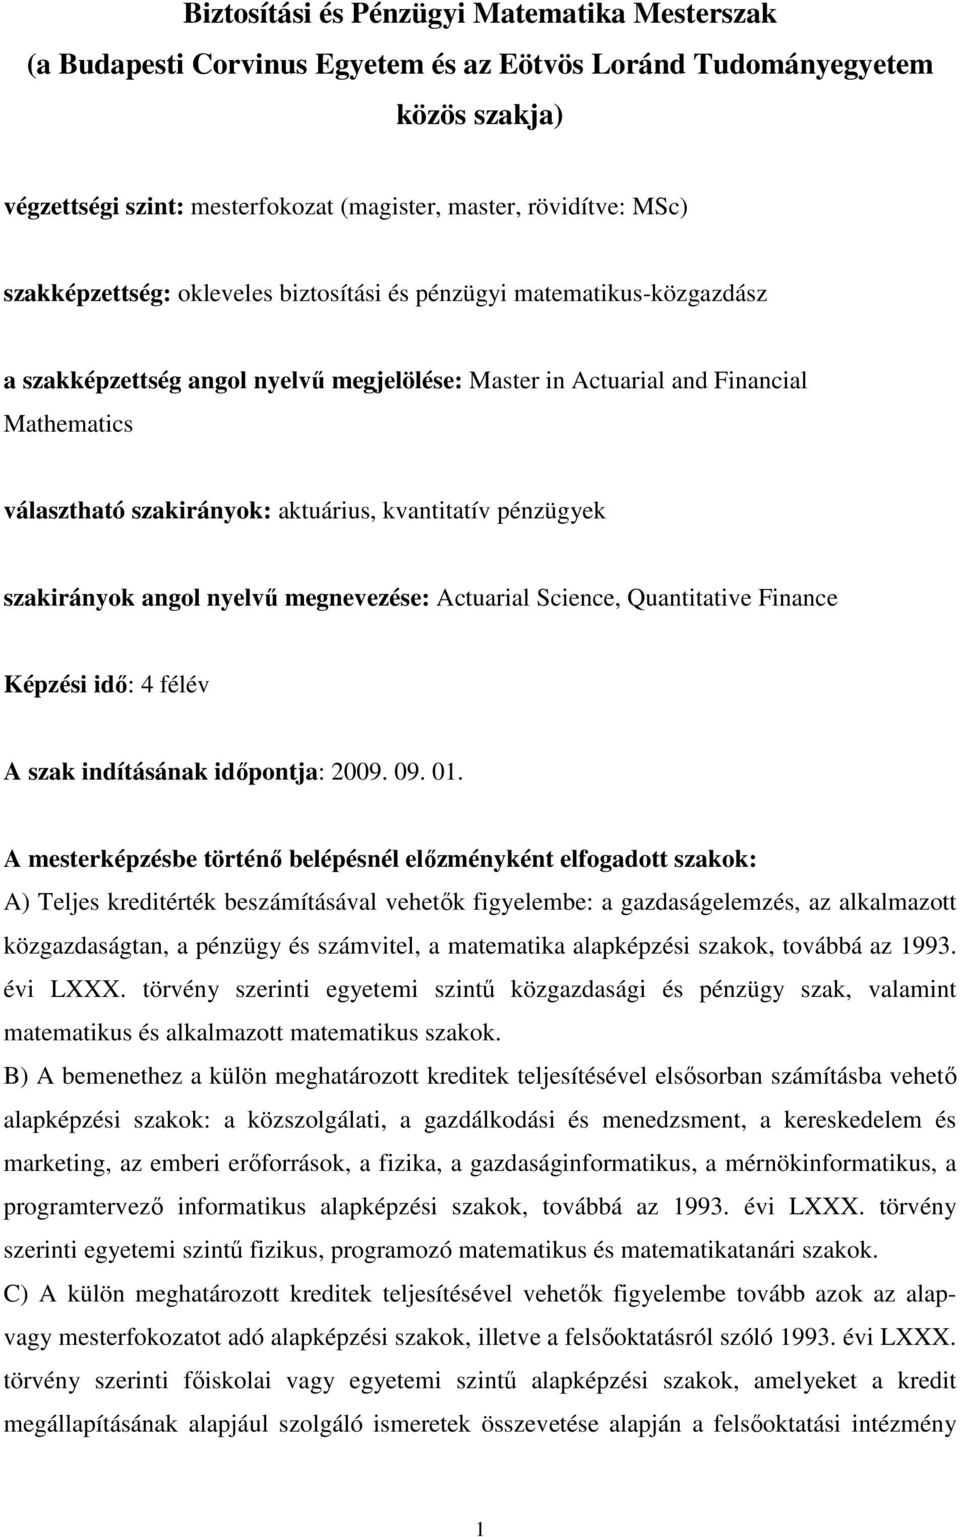 kvantitatív pénzügyek szakirányok angol nyelvő megnevezése: Actuarial Science, Quantitative Finance Képzési idı: 4 félév A szak indításának idıpontja: 2009. 09. 01.